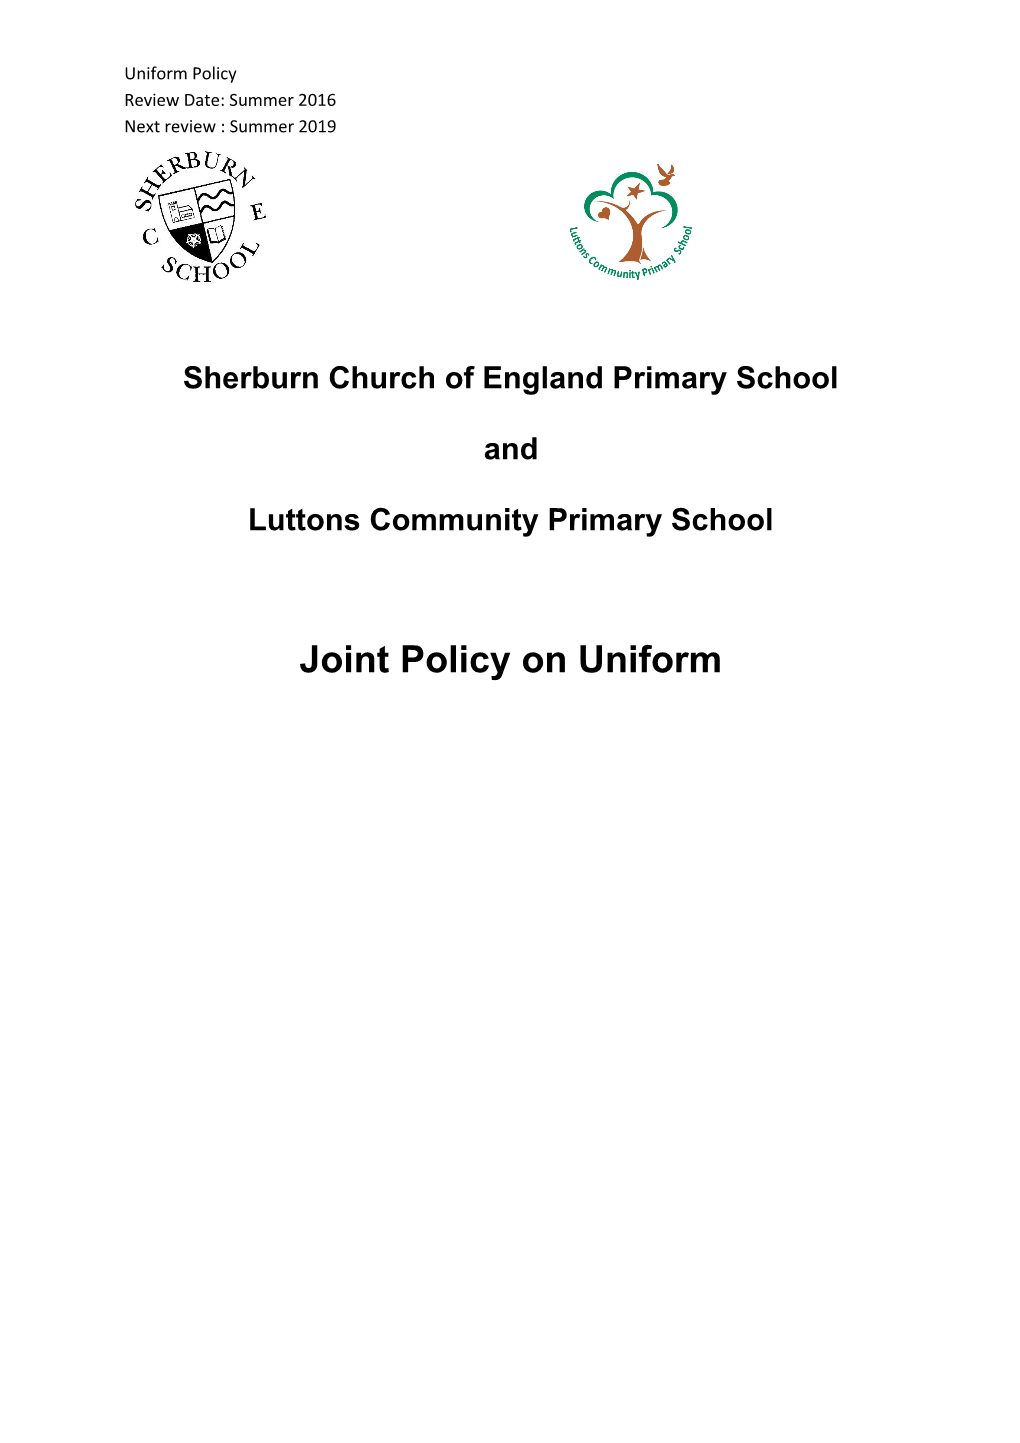 Sherburn Church of England Primary School